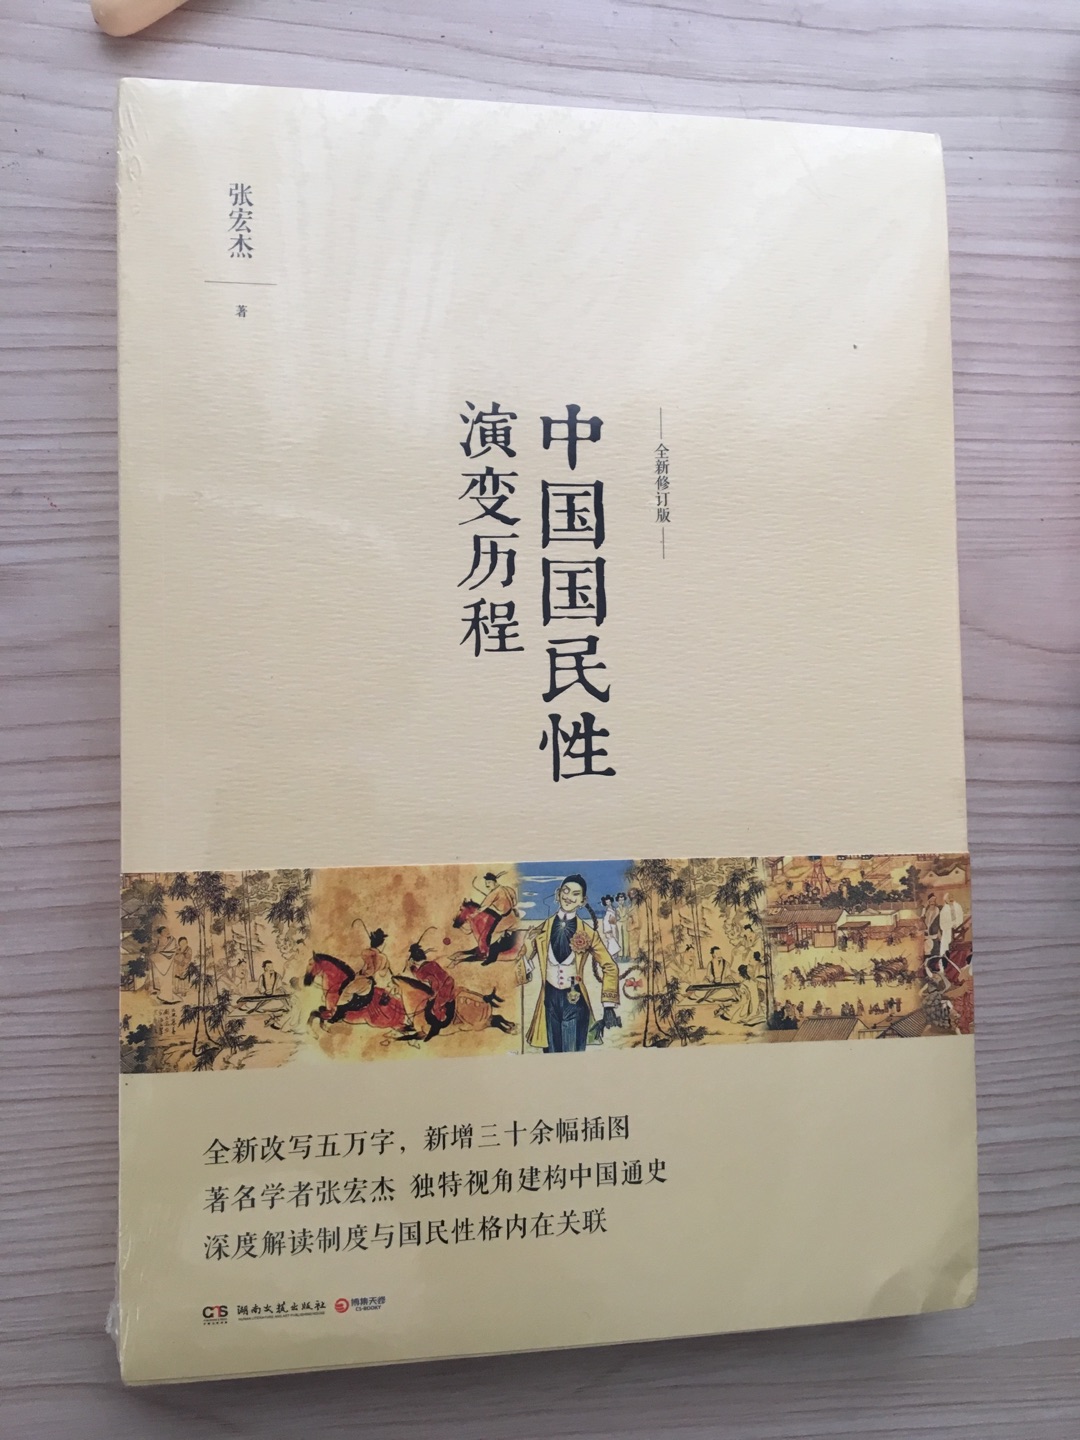 张宏杰写得很好的一本书，它就是中国历史的又一个视角的总结。